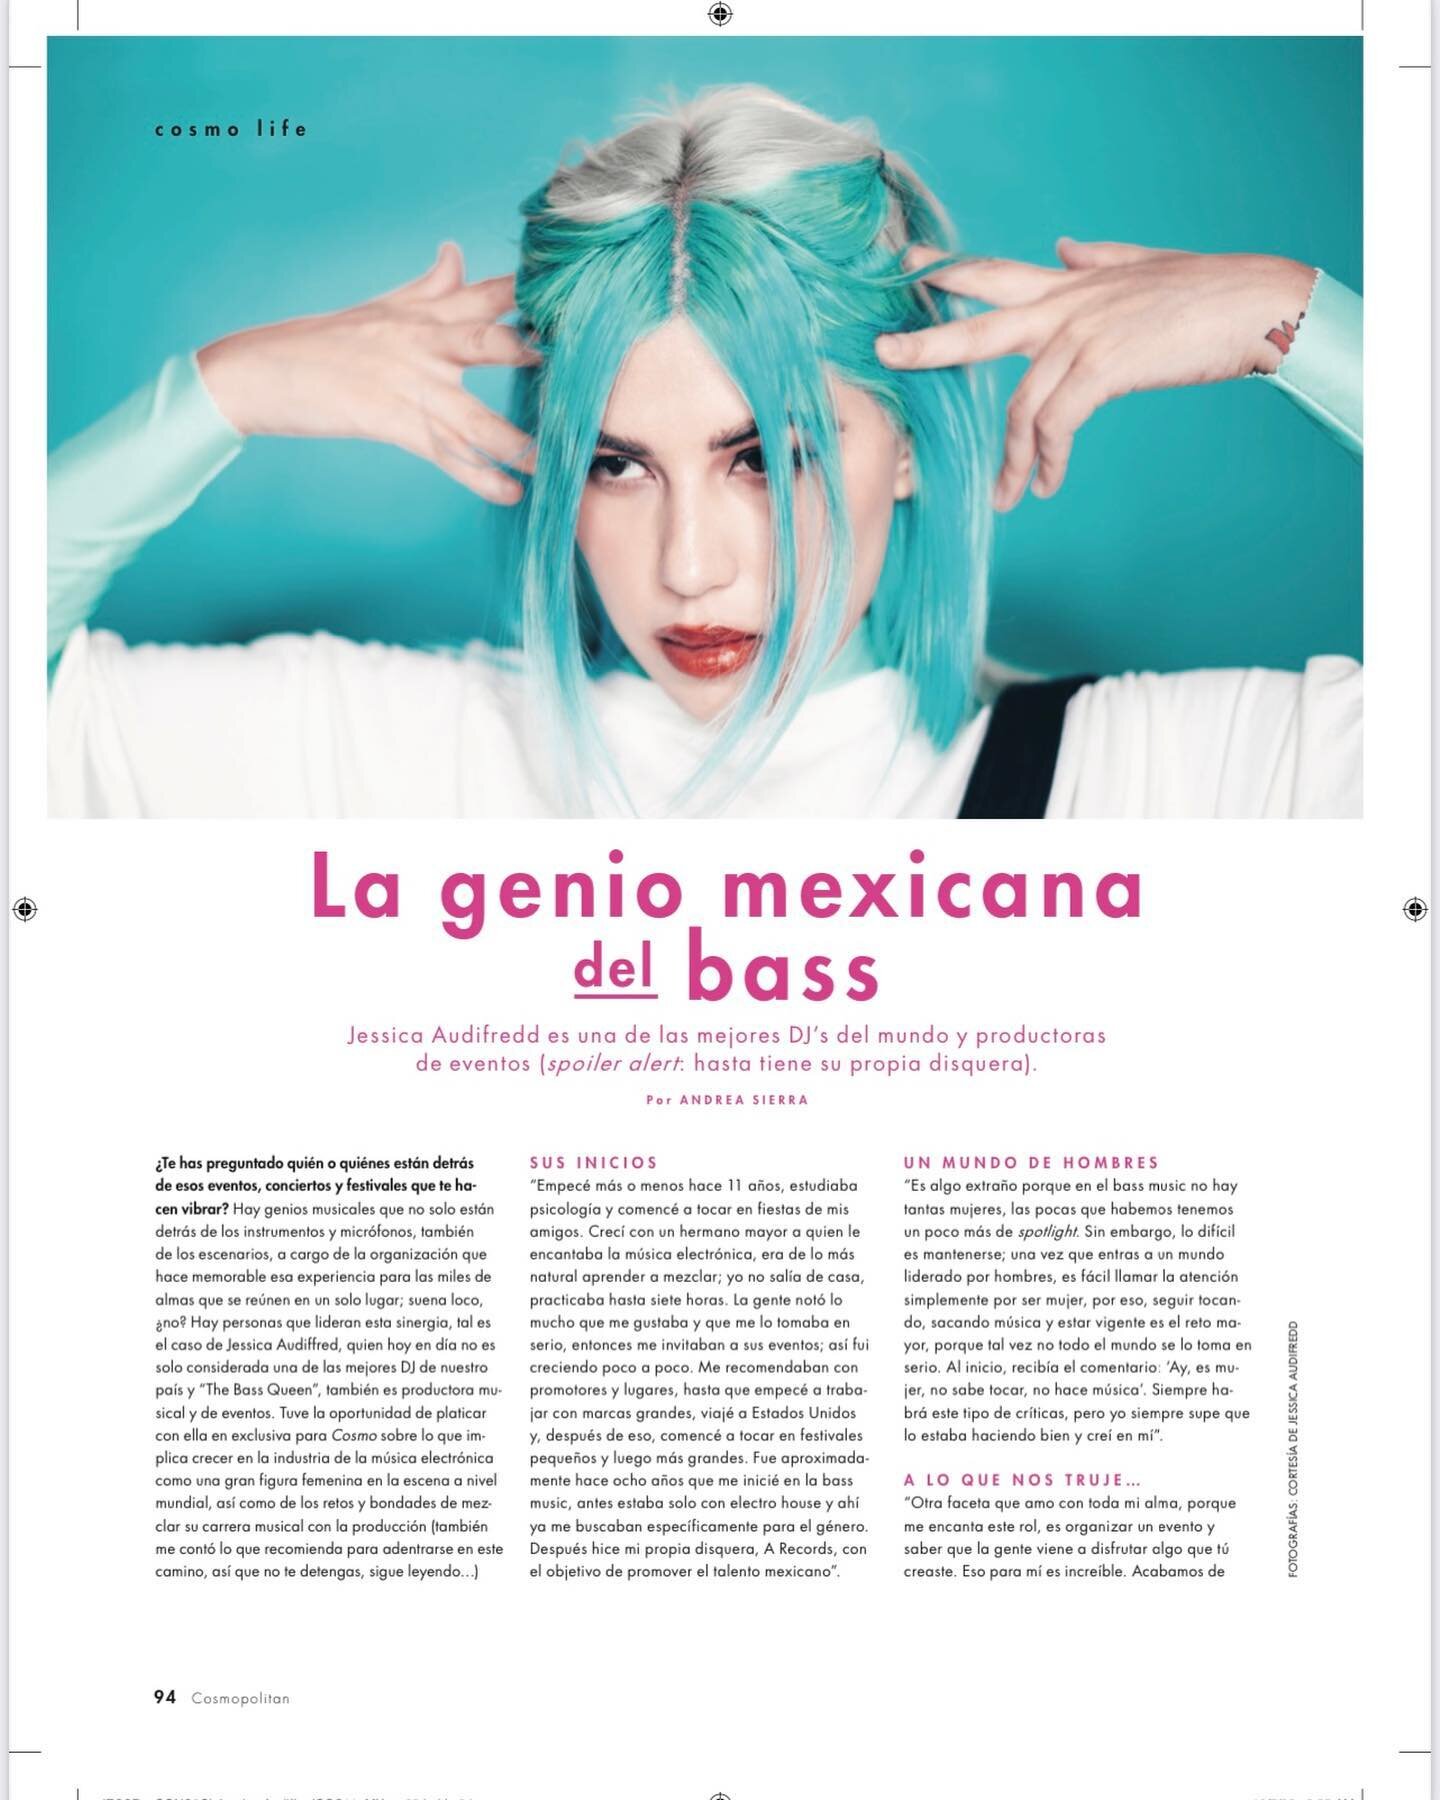 @jessica_audiffred in @cosmopolitanmx @cosmopolitan 

&ldquo;La genio Mexicana del Bass&rdquo;

Thanks for the love!